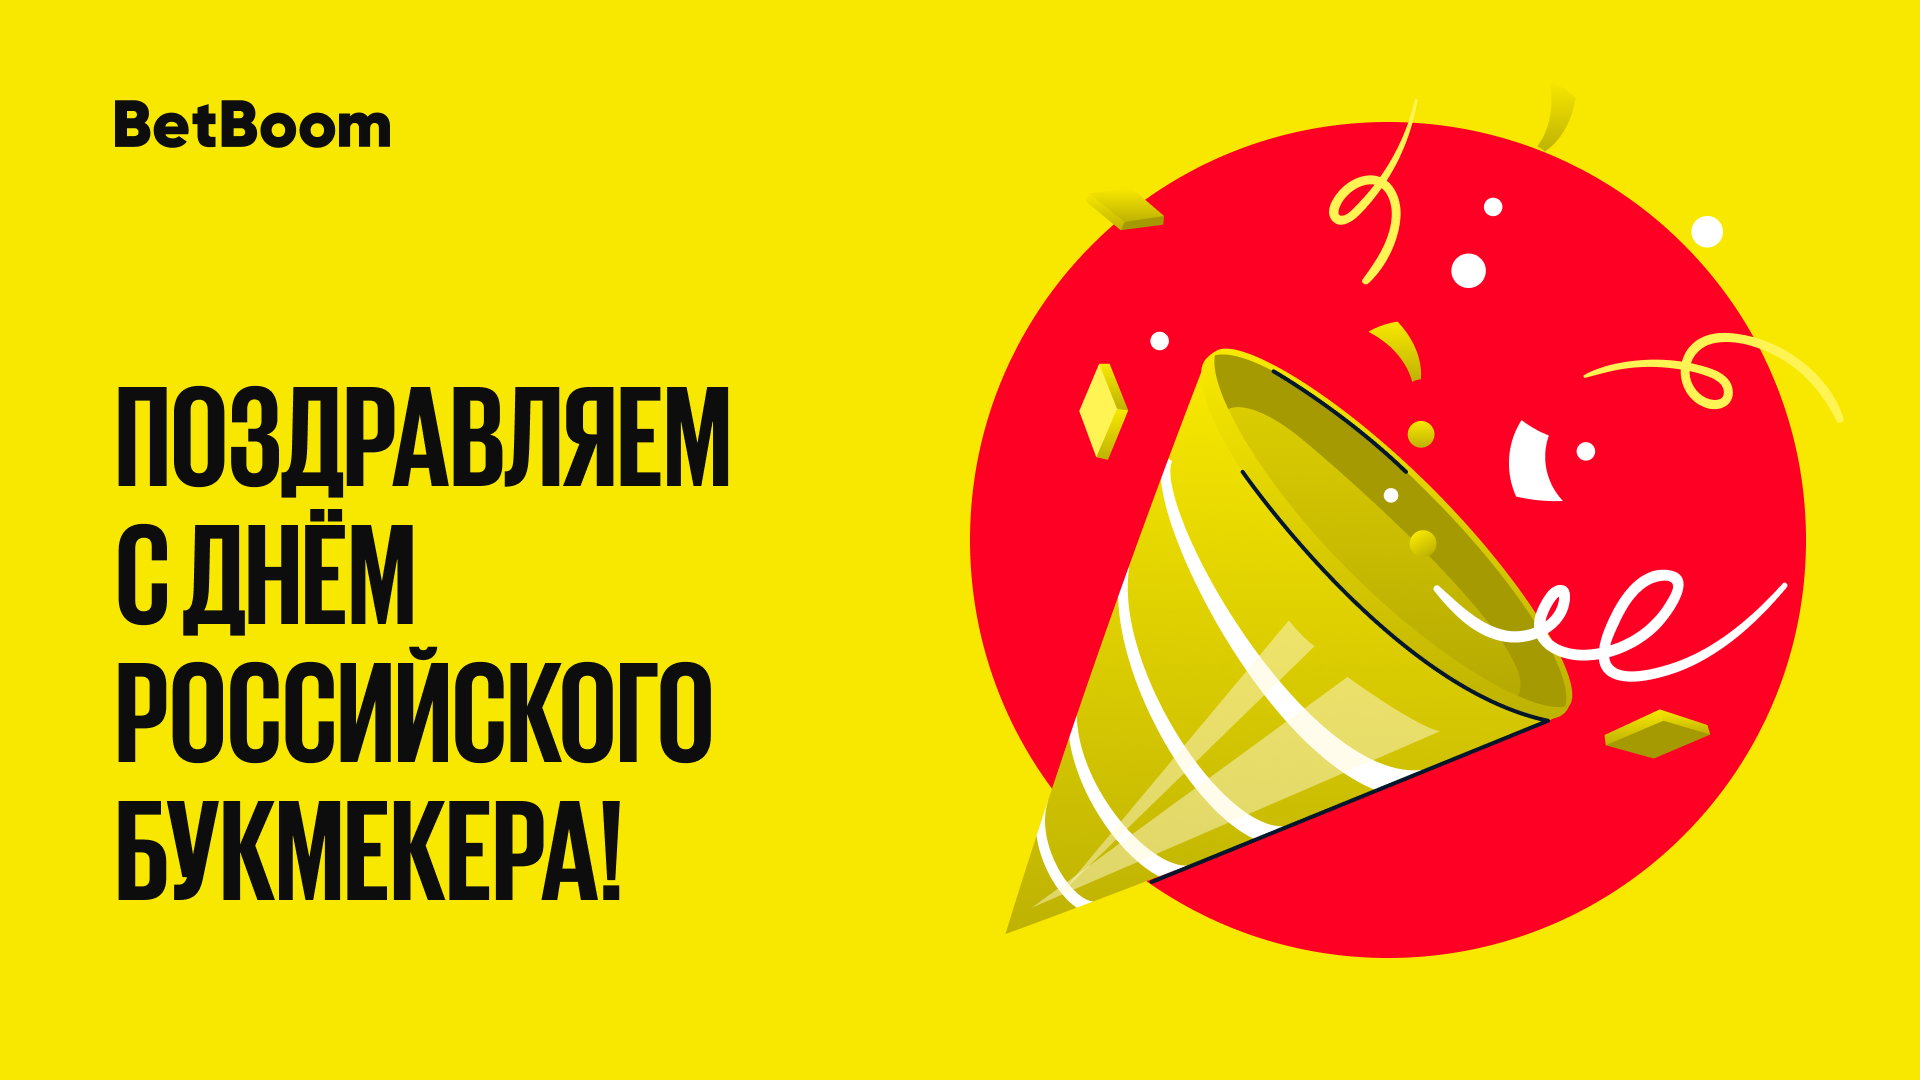 BetBoom разыгрывает фрибеты в честь Дня российского букмекера